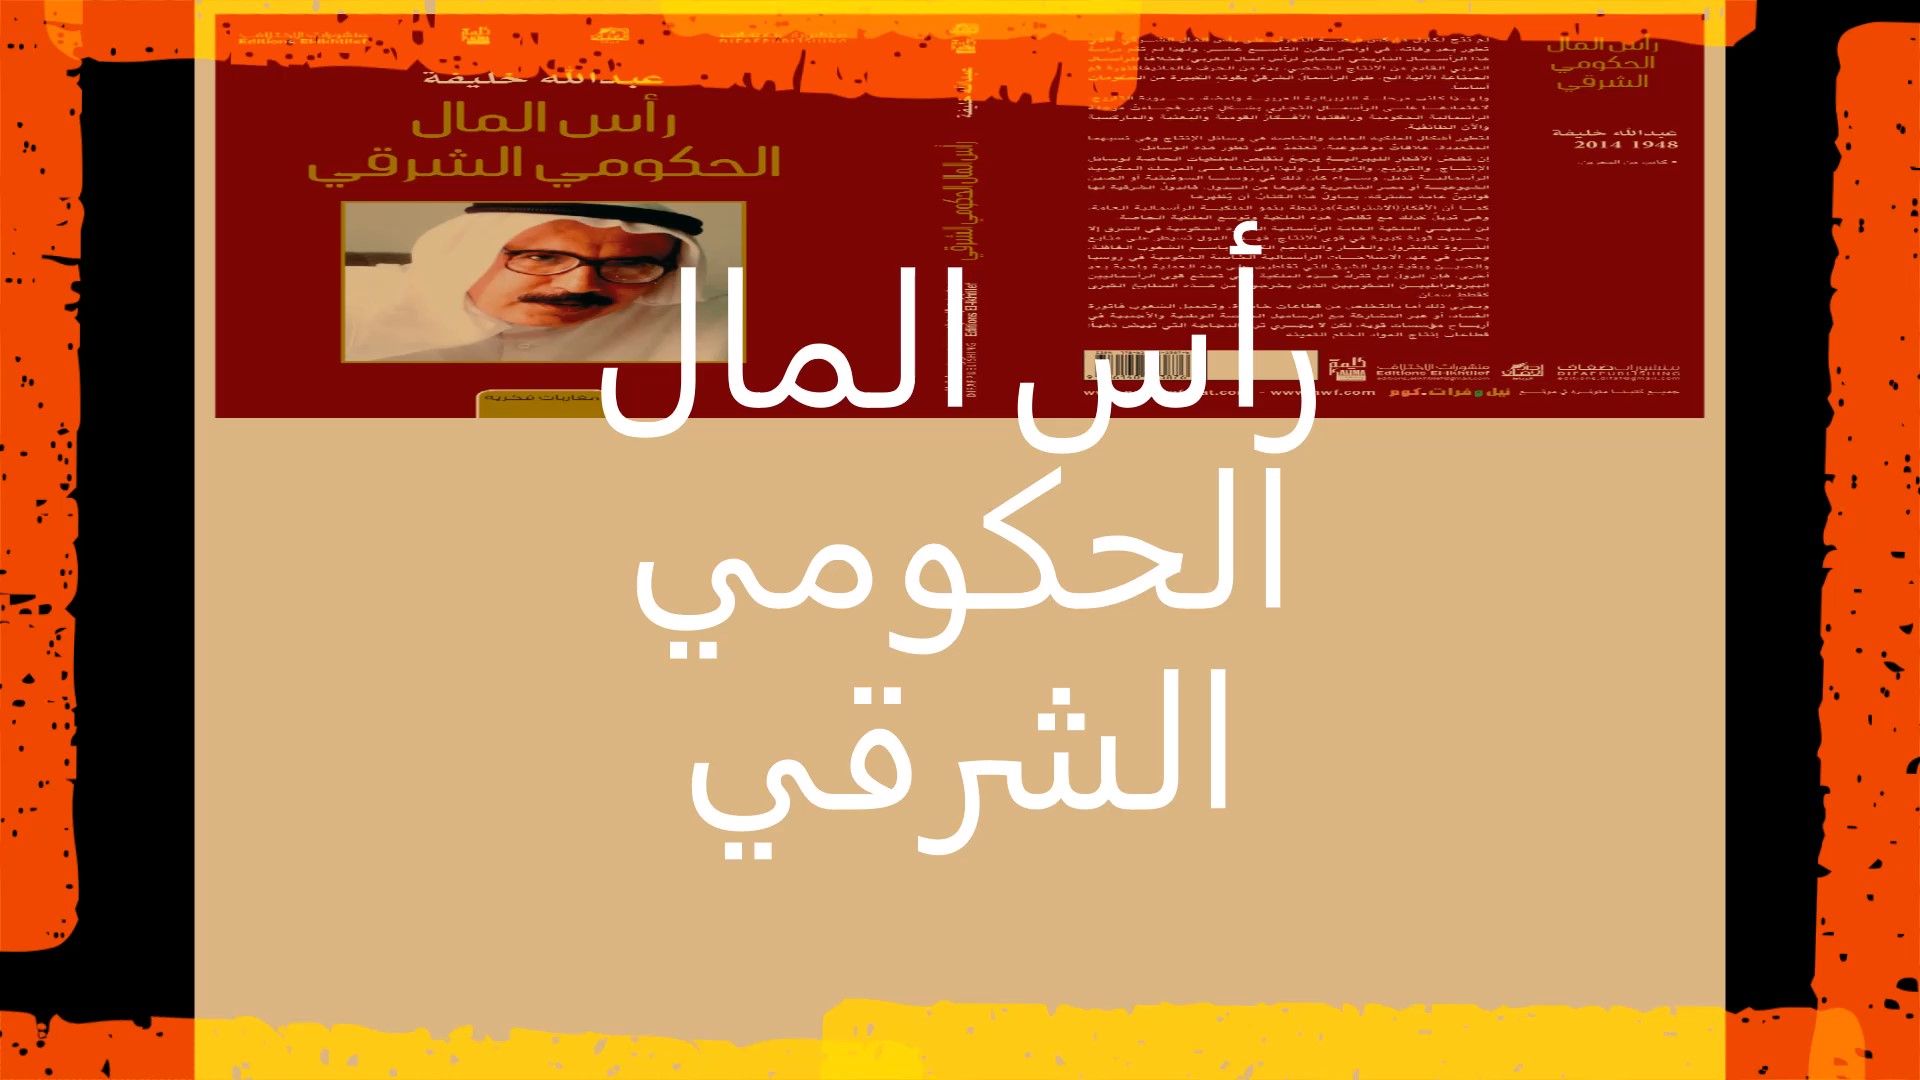 عبدالله خليفة كاتب وروائي من البحرين عبـــــــدالله